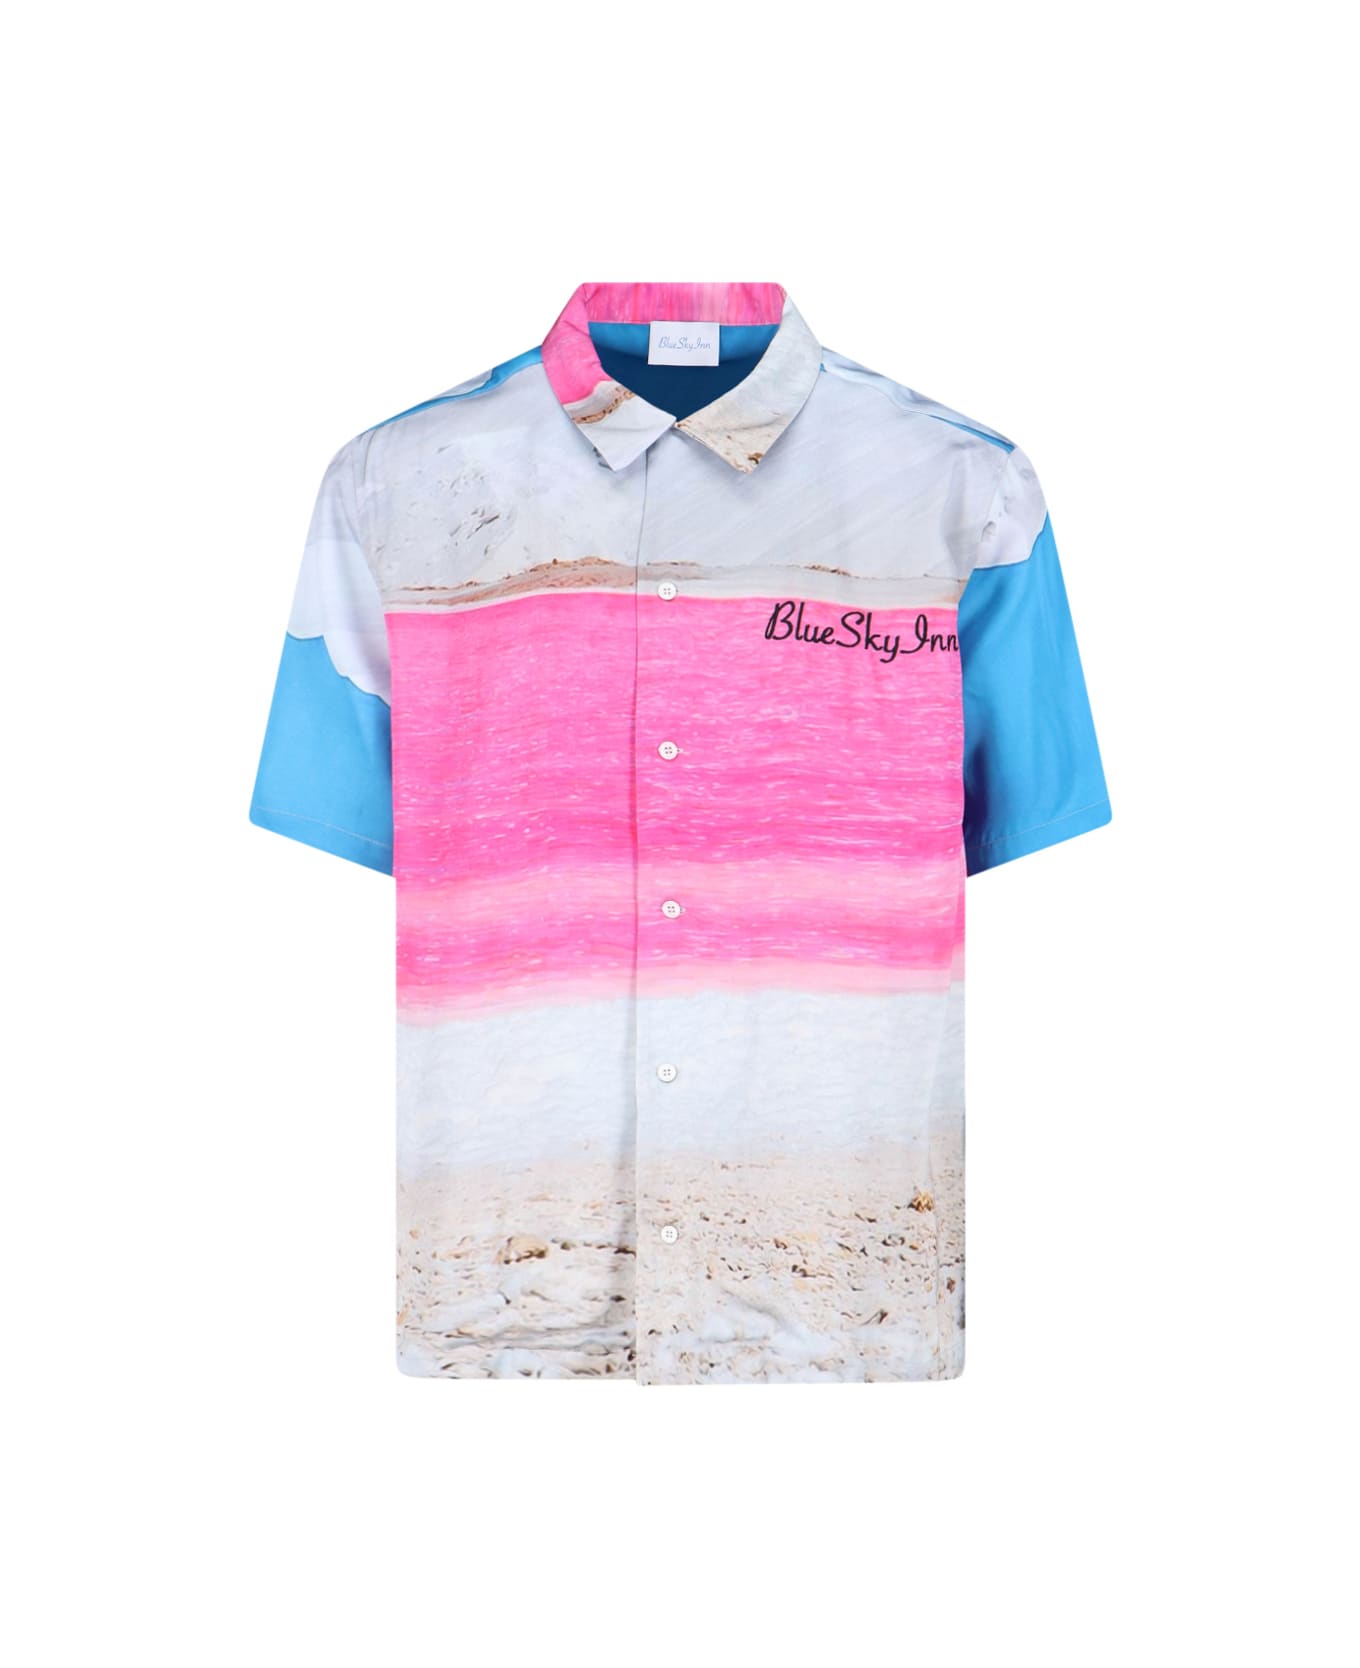 Blue Sky Inn "pink Salt" Shirt - Multicolor